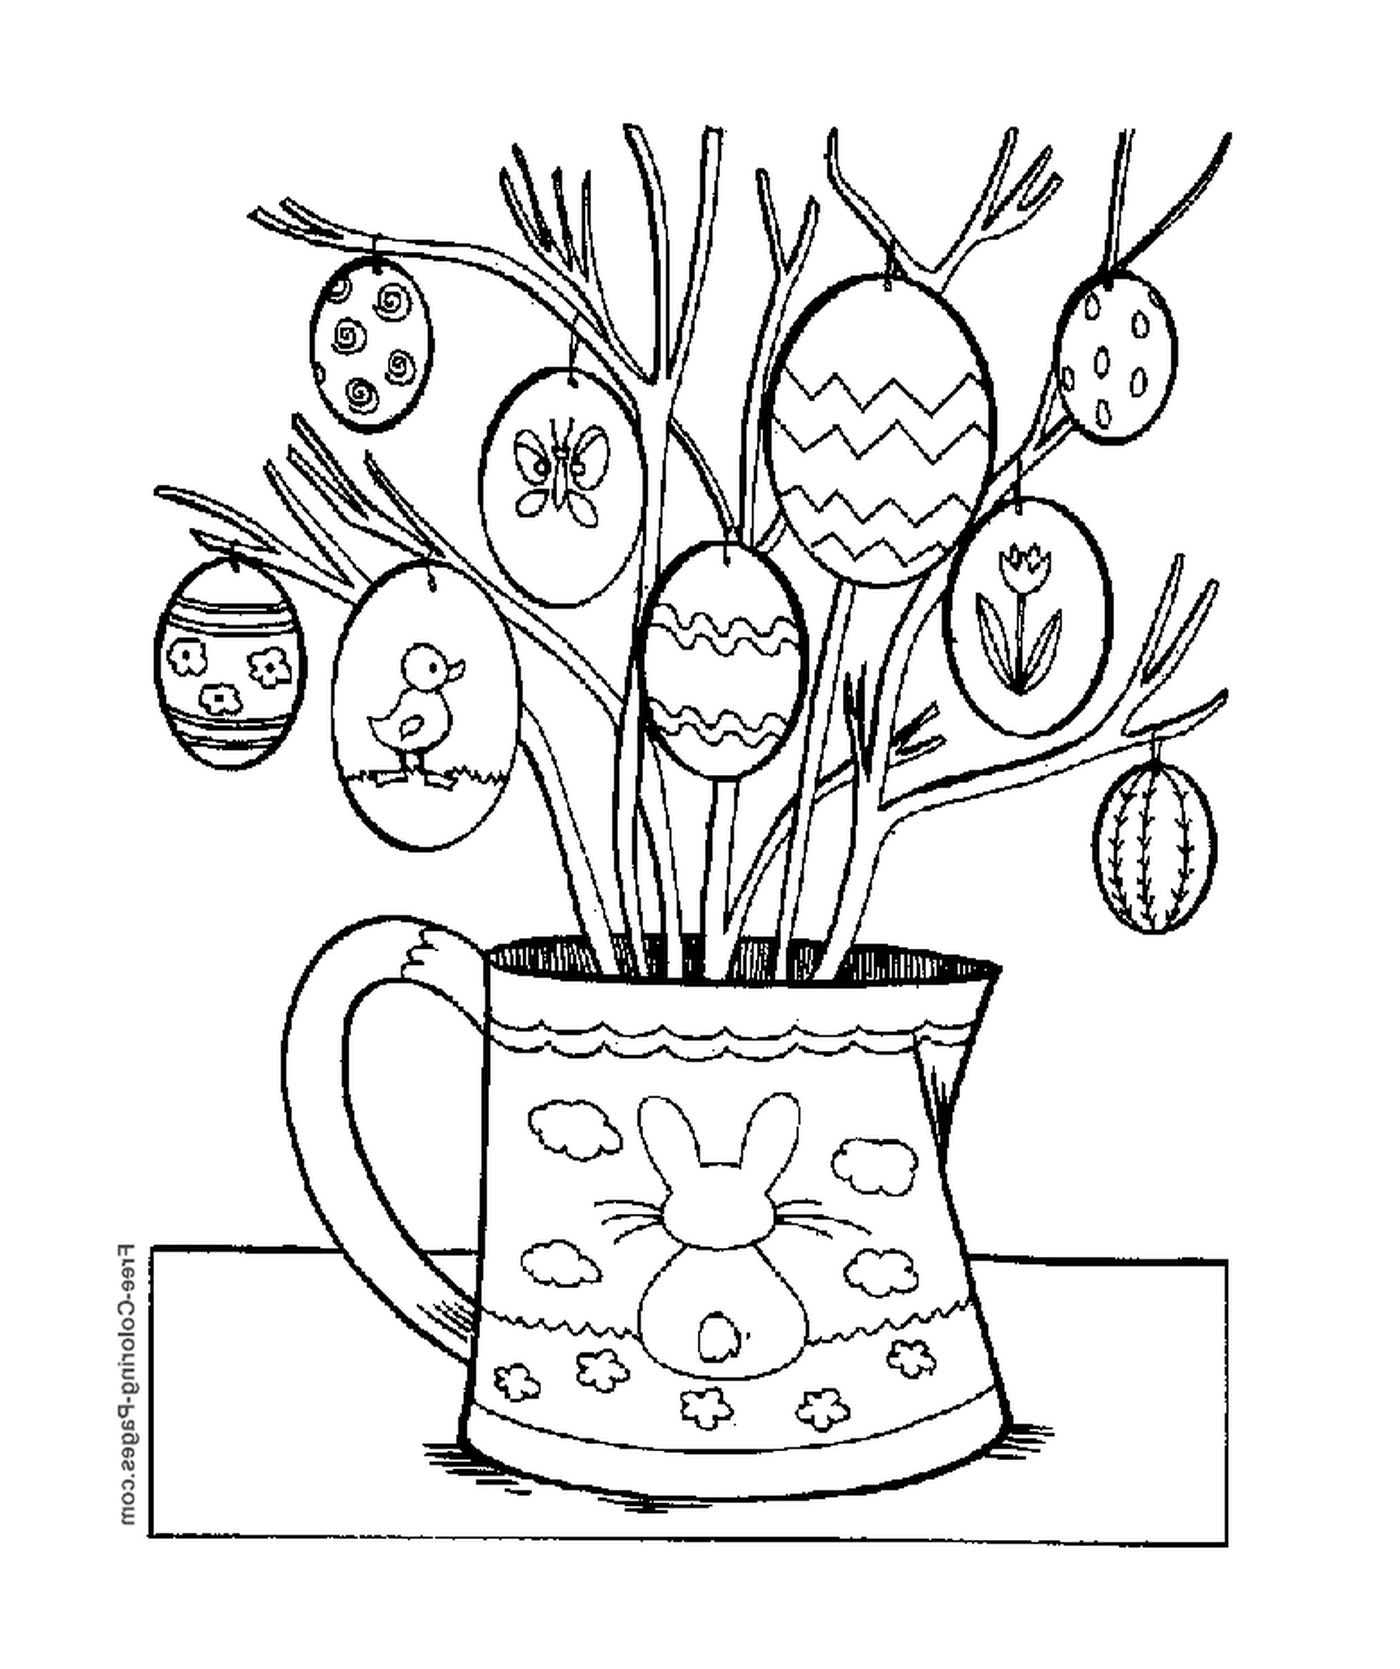  Eine Vase gefüllt mit Ästen und Eiern 